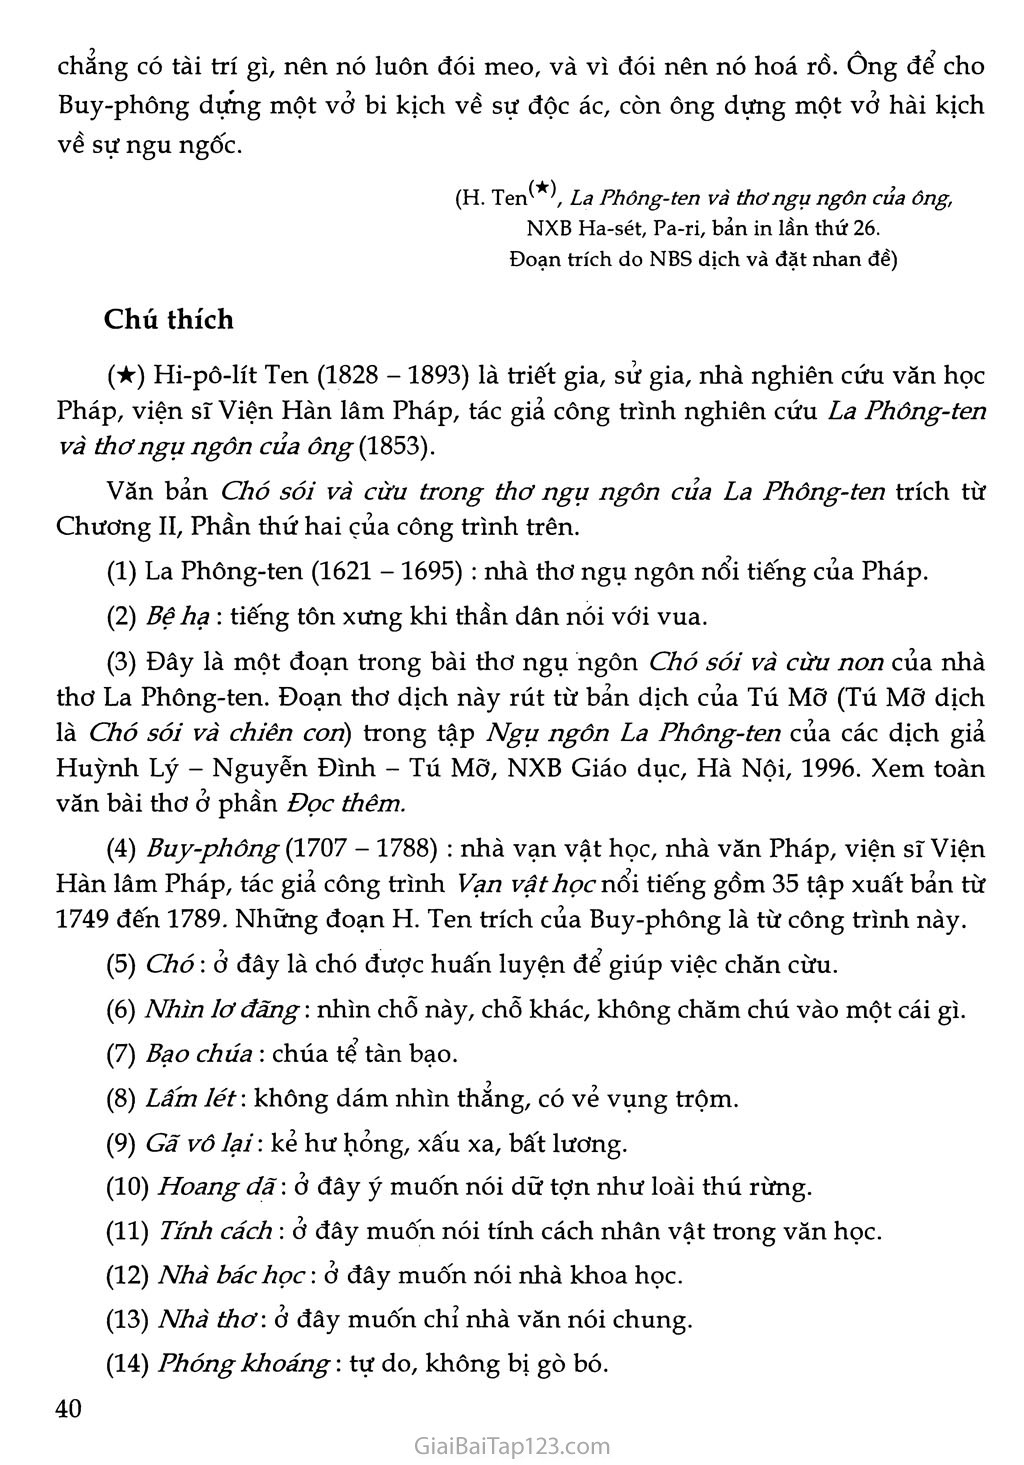 Chó sói và cừu trong thơ ngụ ngôn của La Phông-ten (trích) trang 4